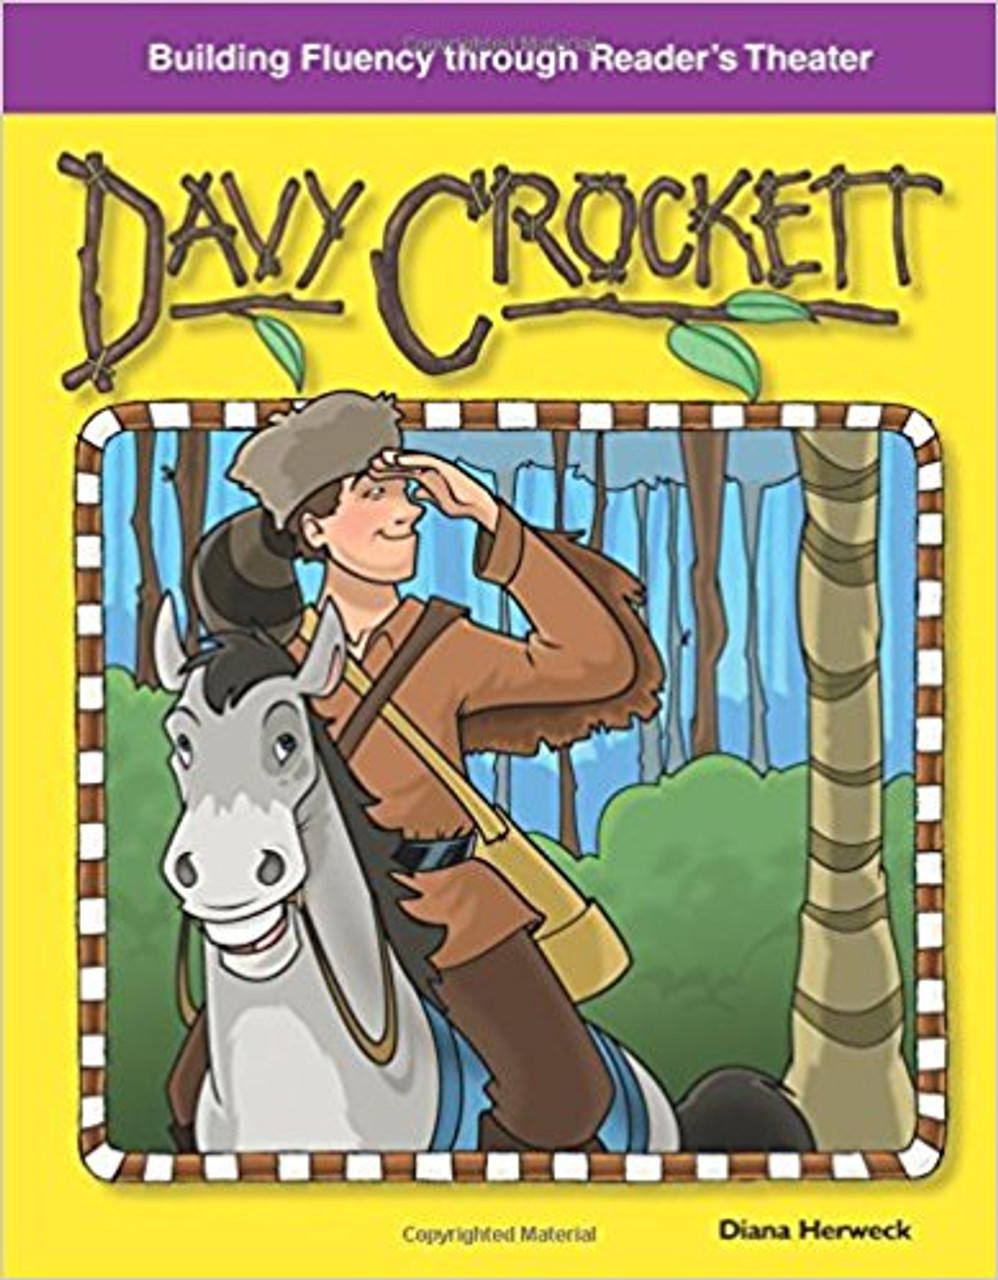 Davy Crockett by Diana Herweck